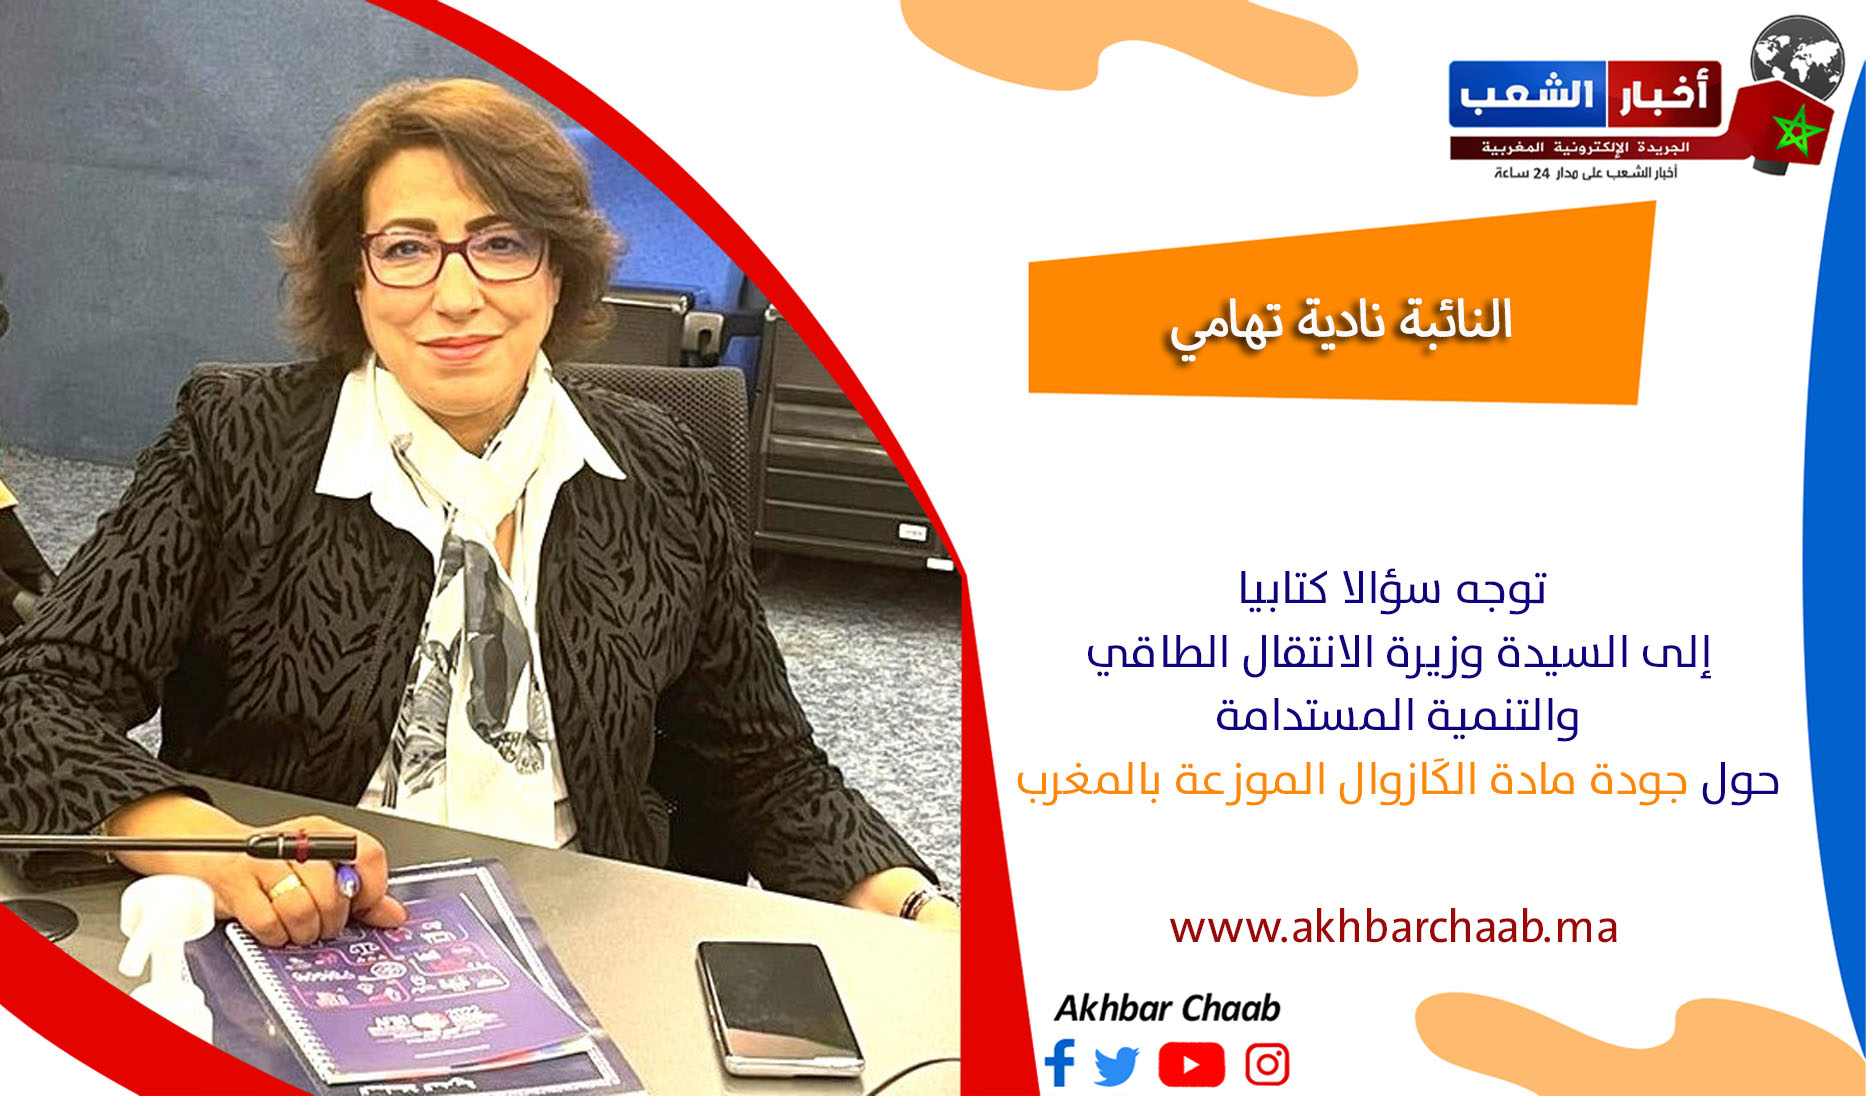 نادية تهامي .. توجه سؤالا كتابيا إلى السيدة وزيرة الانتقال الطاقي والتنمية المستدامة حول جودة مادة الكَازوال الموزعة بالمغرب